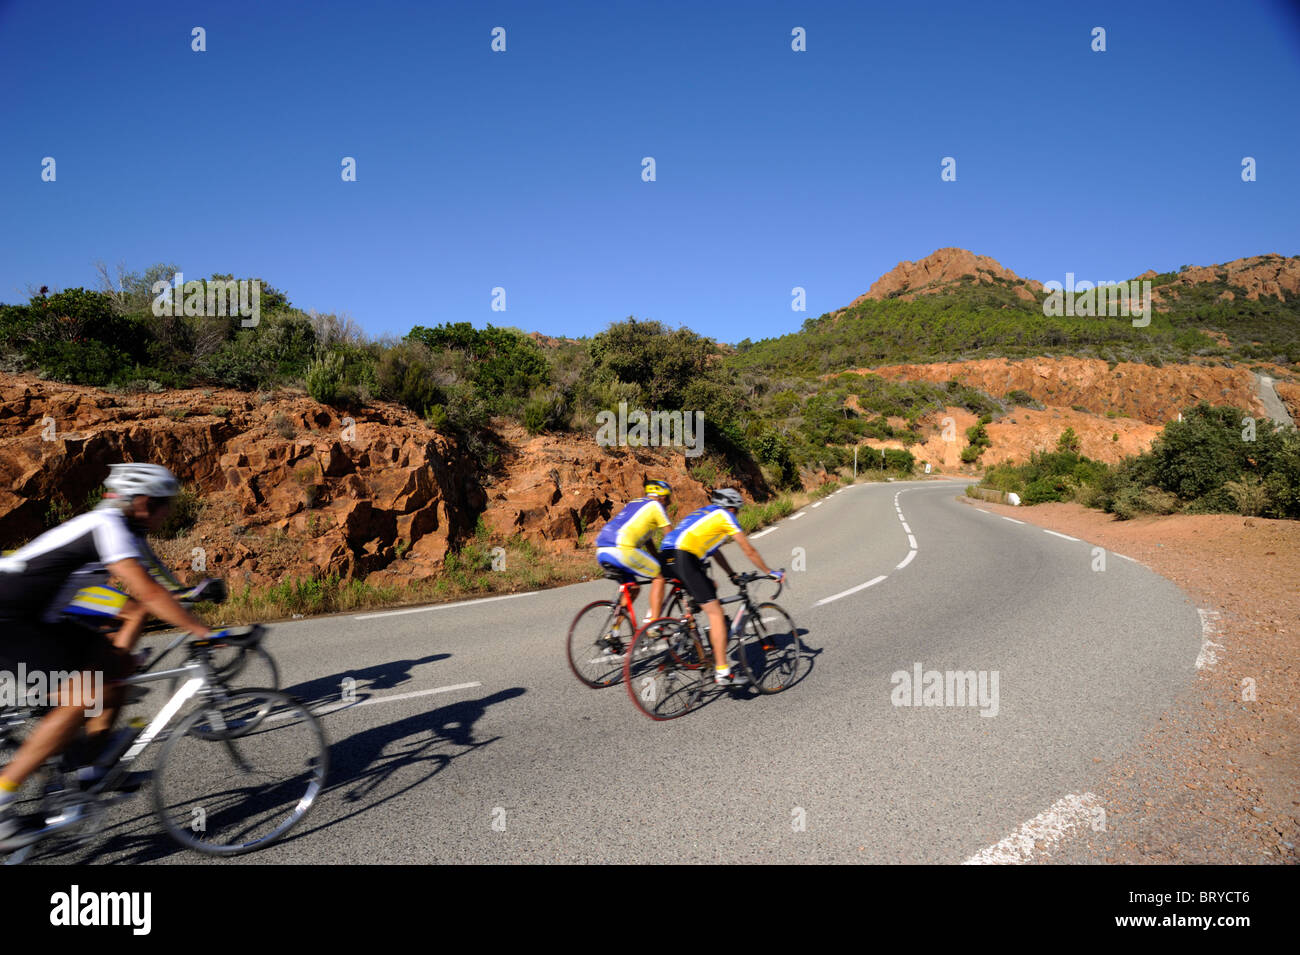 France, Provence, Côte d'Azur, Corniche de L'Esterel road, bicycles Stock Photo